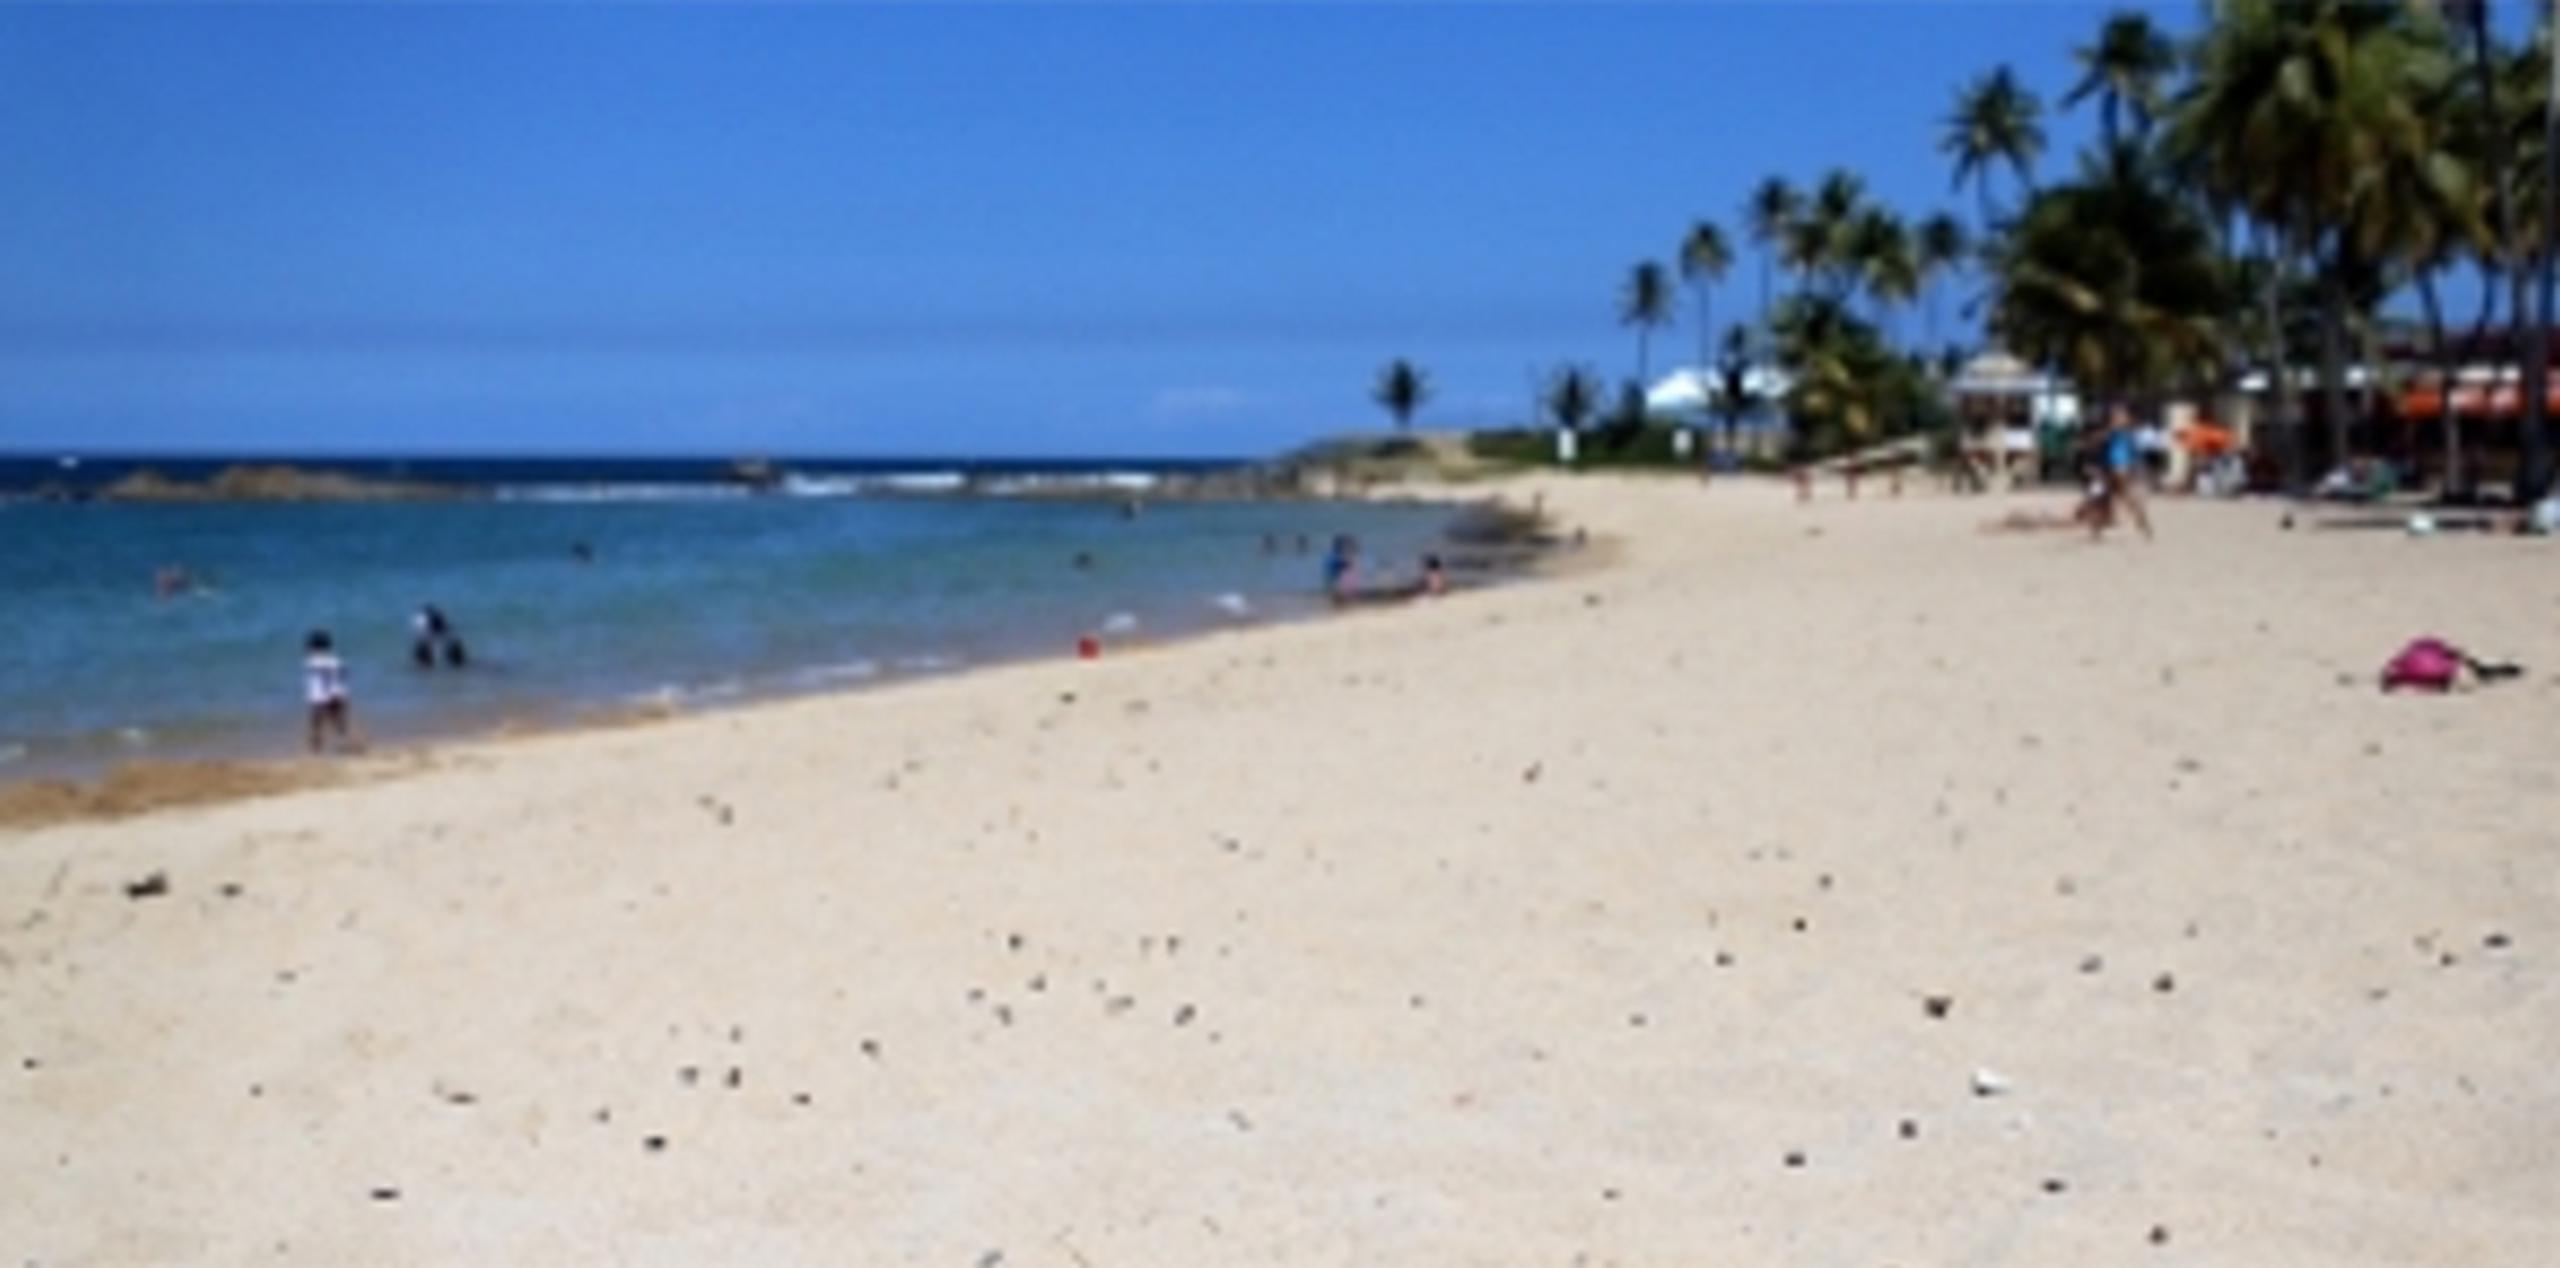 A eso de las 4:15 p.m., el cadáver de una persona que aún no ha sido identificada, fue divisada flotando en esa playa. (Archivo)